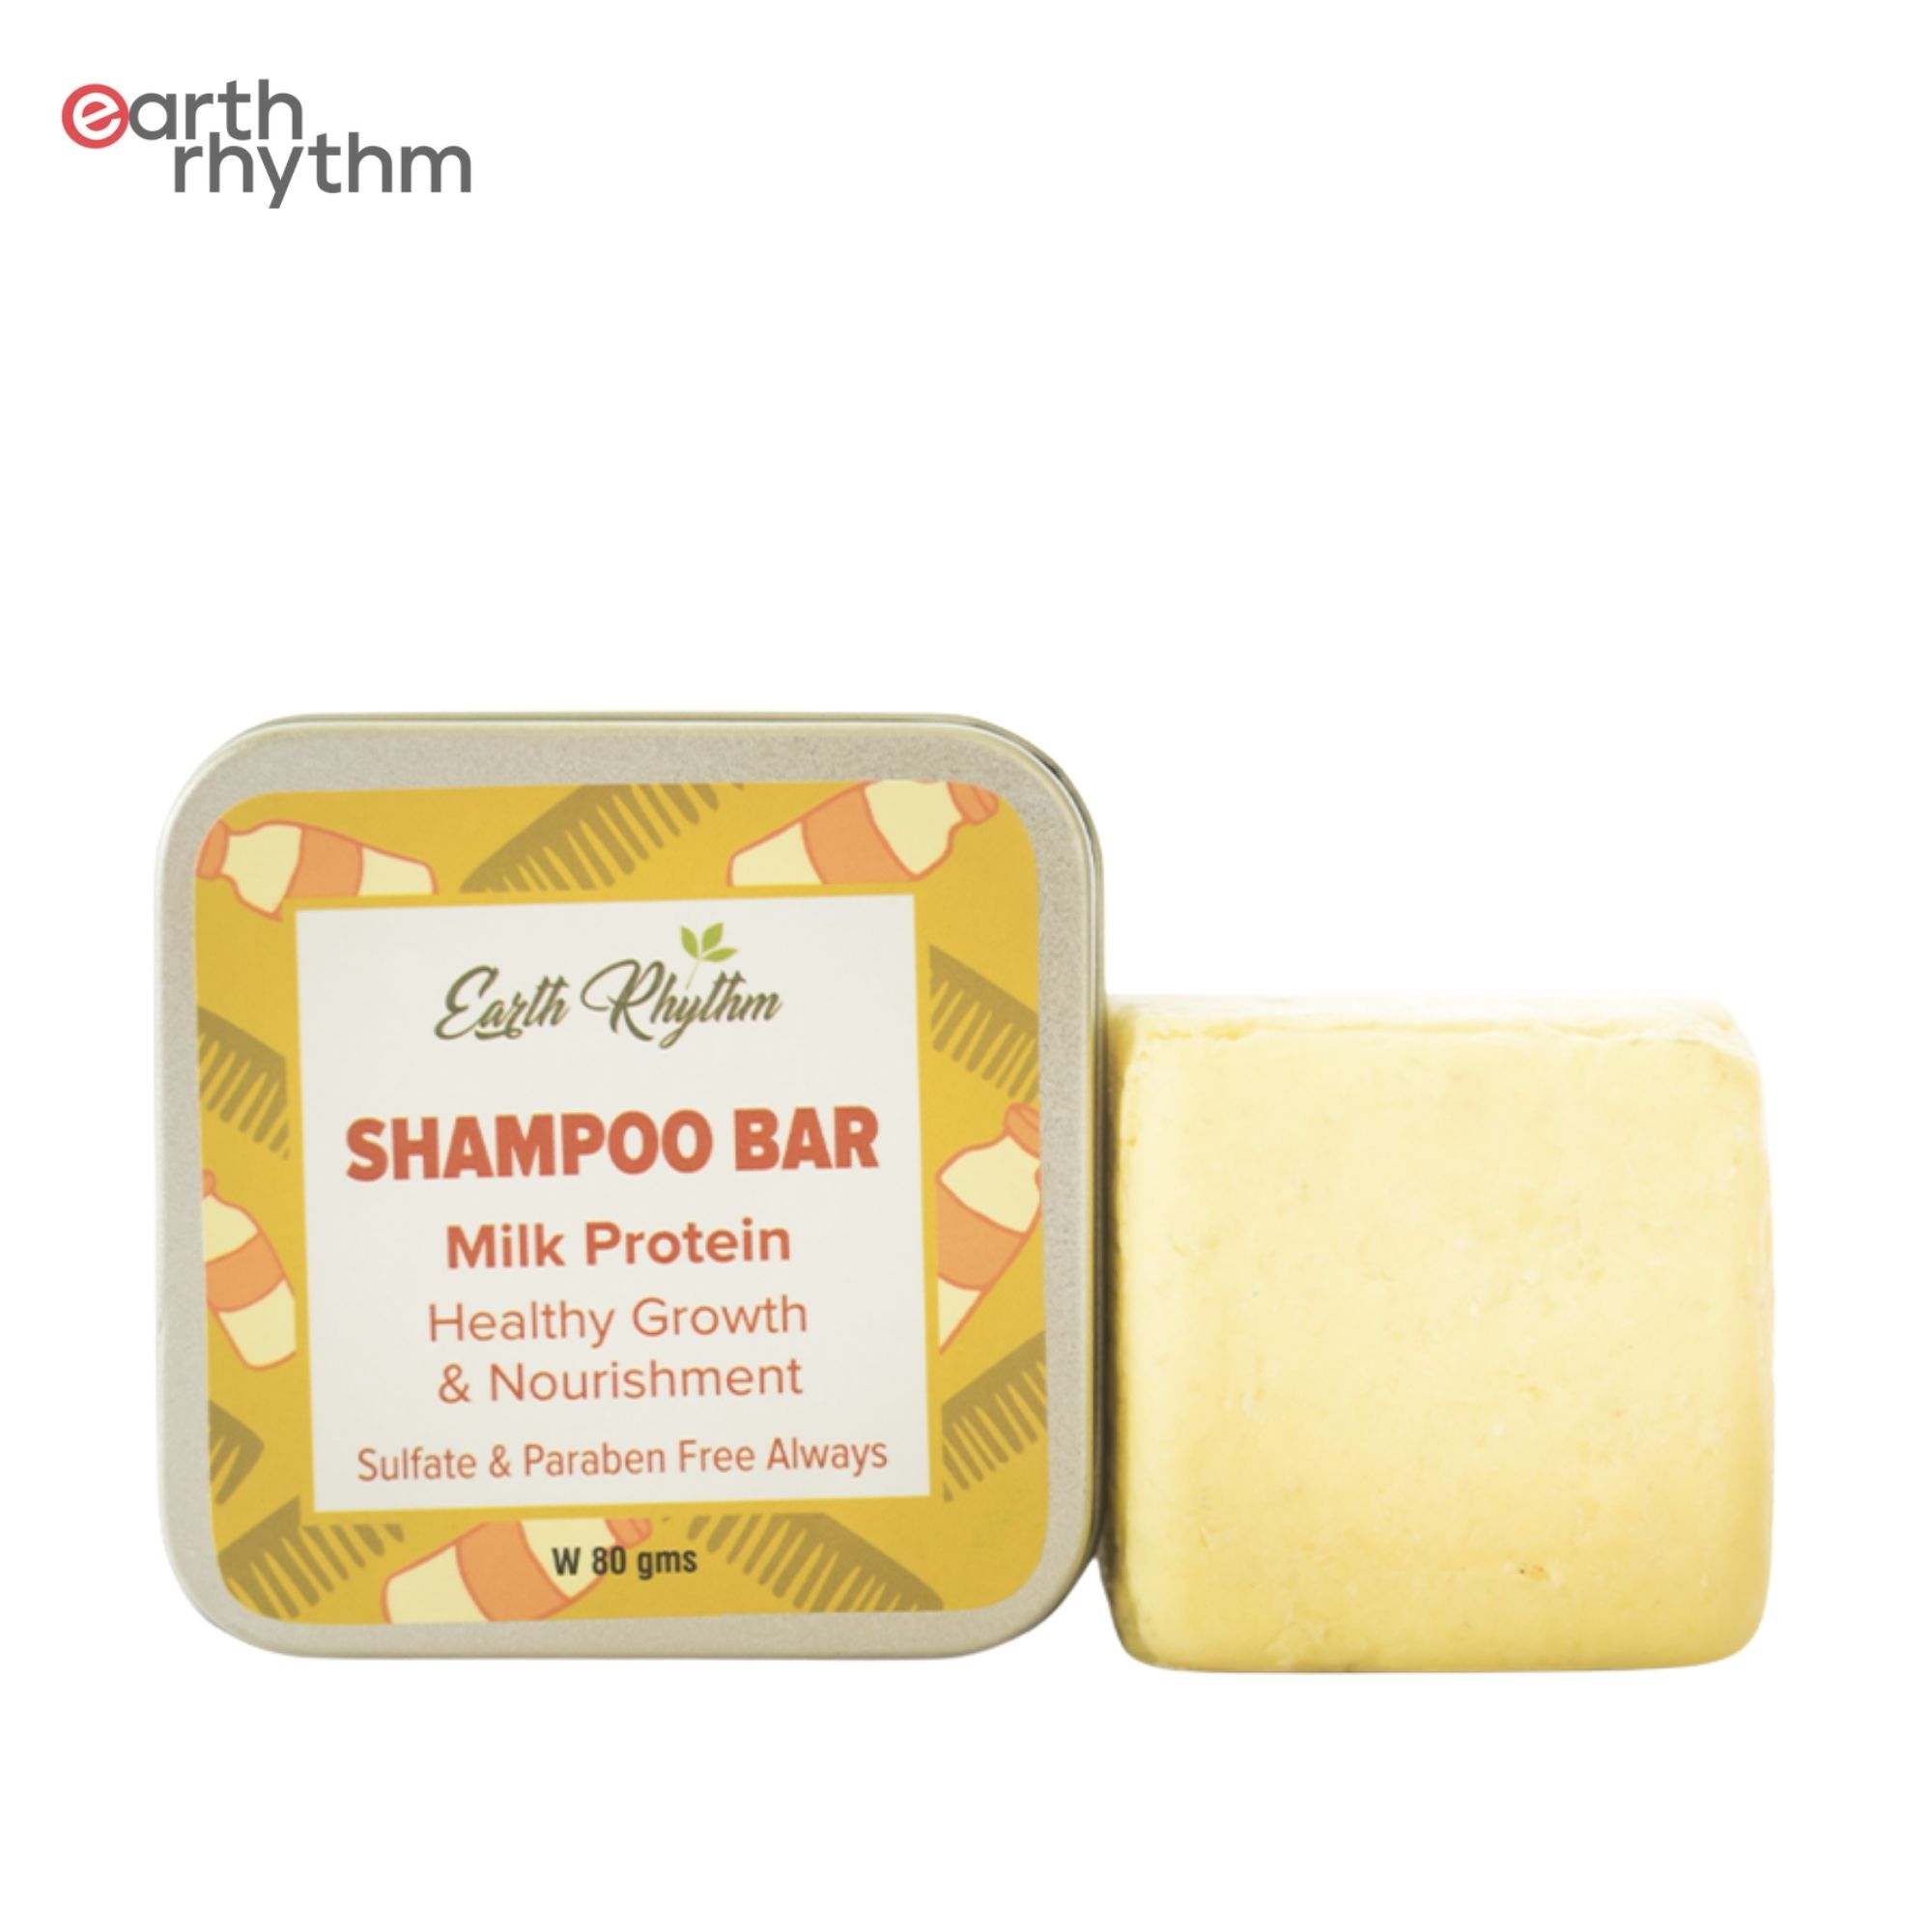 Earth Rhythm Milk Protein Shampoo Bar - 80 gm (Tin Box)